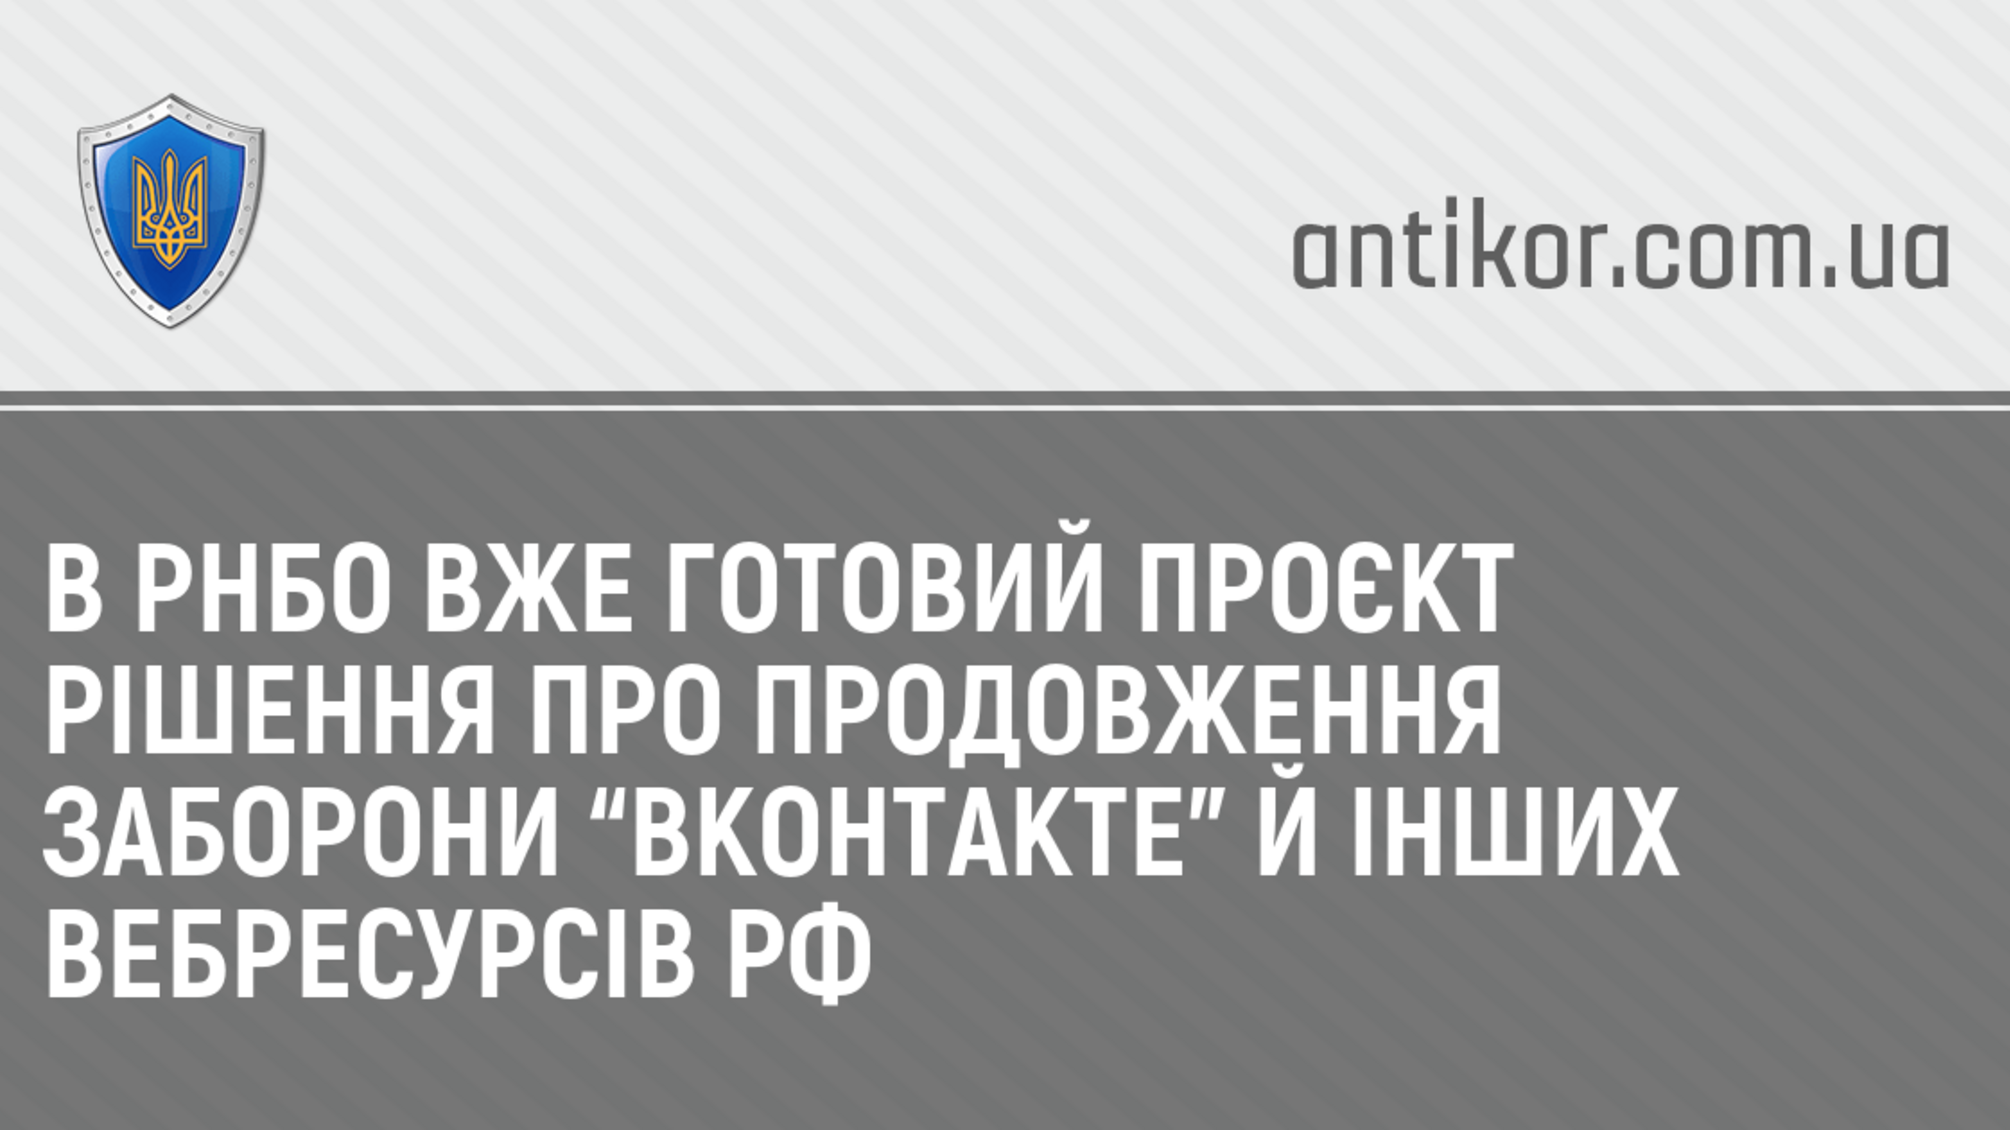 В РНБО вже готовий проєкт рішення про продовження заборони “Вконтакте” й інших вебресурсів РФ